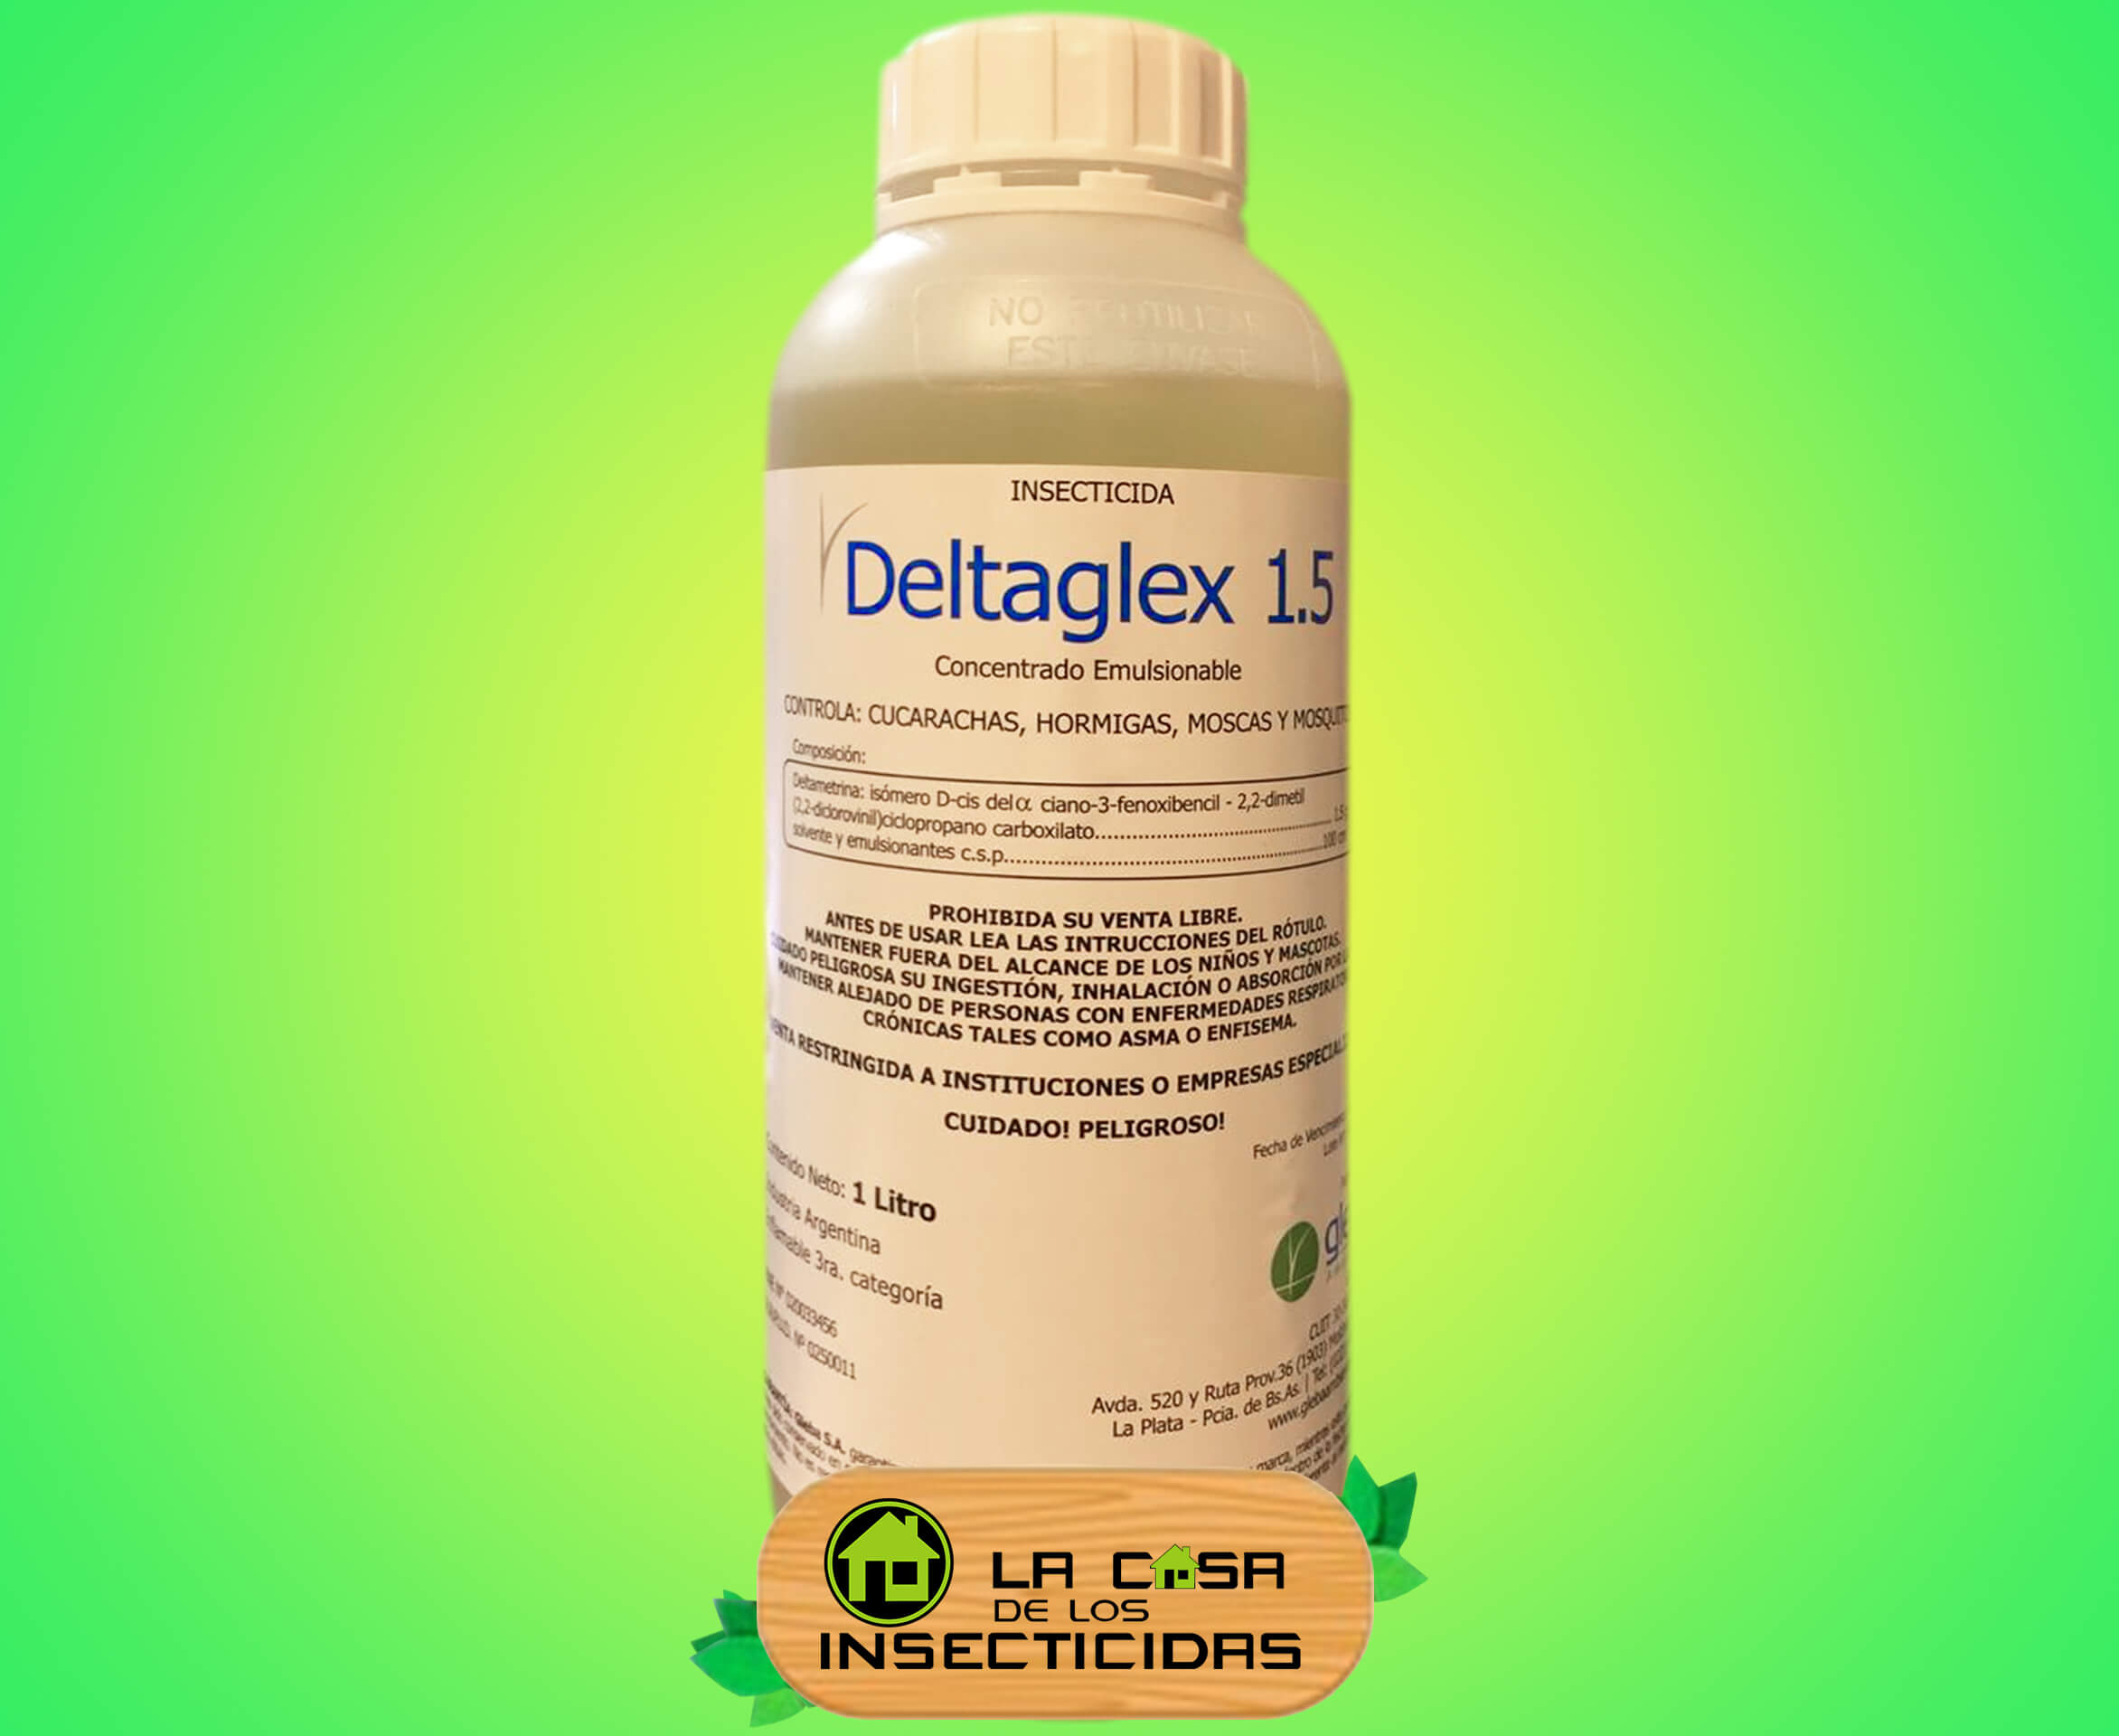 Deltaglex 1.5